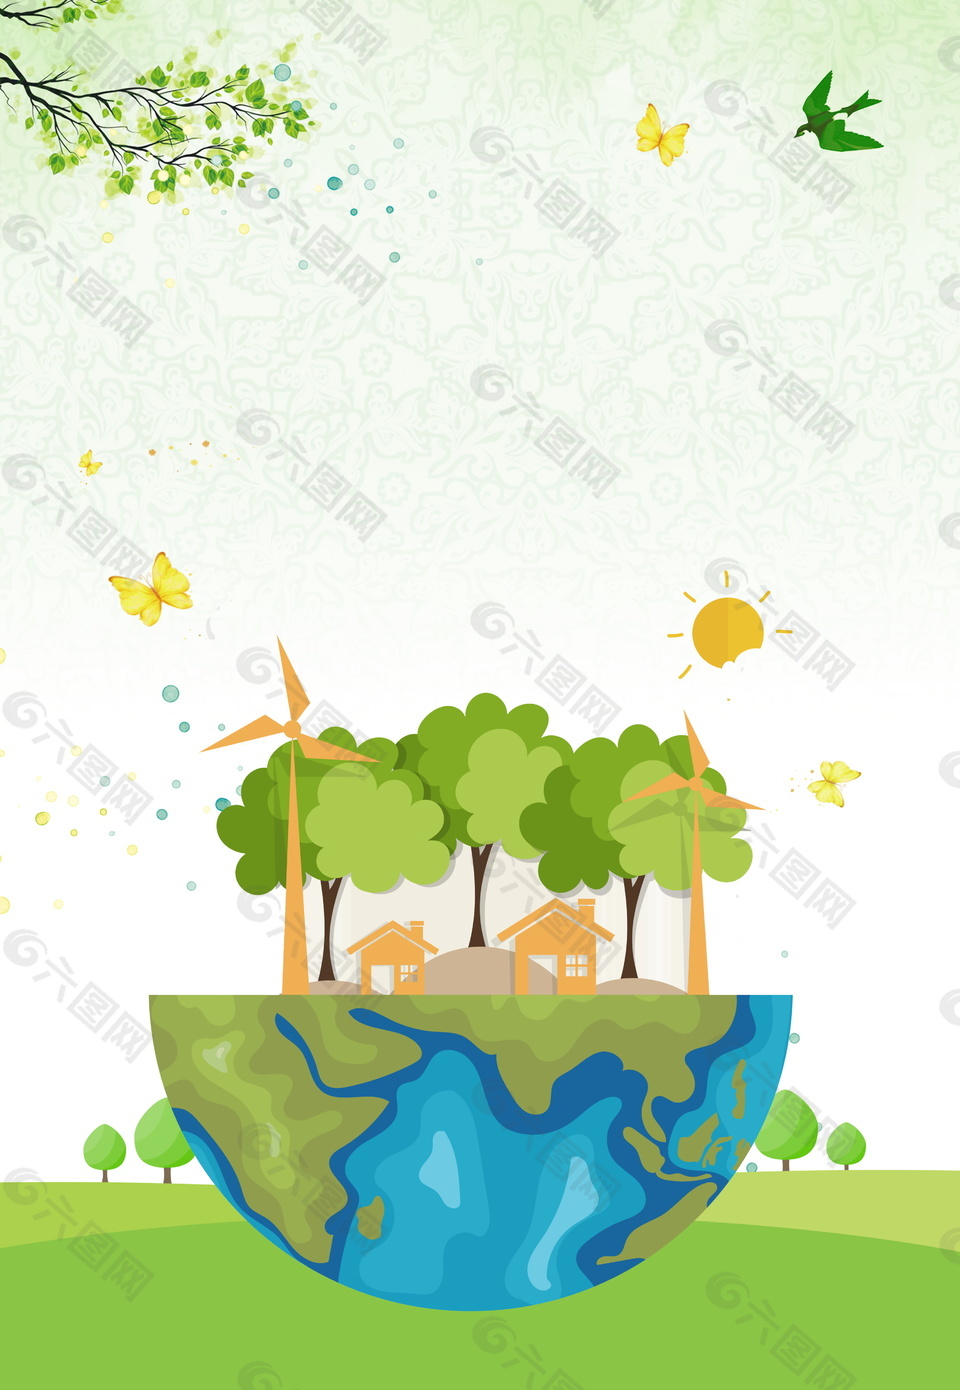 创意世界地球日环保主题海报背景设计